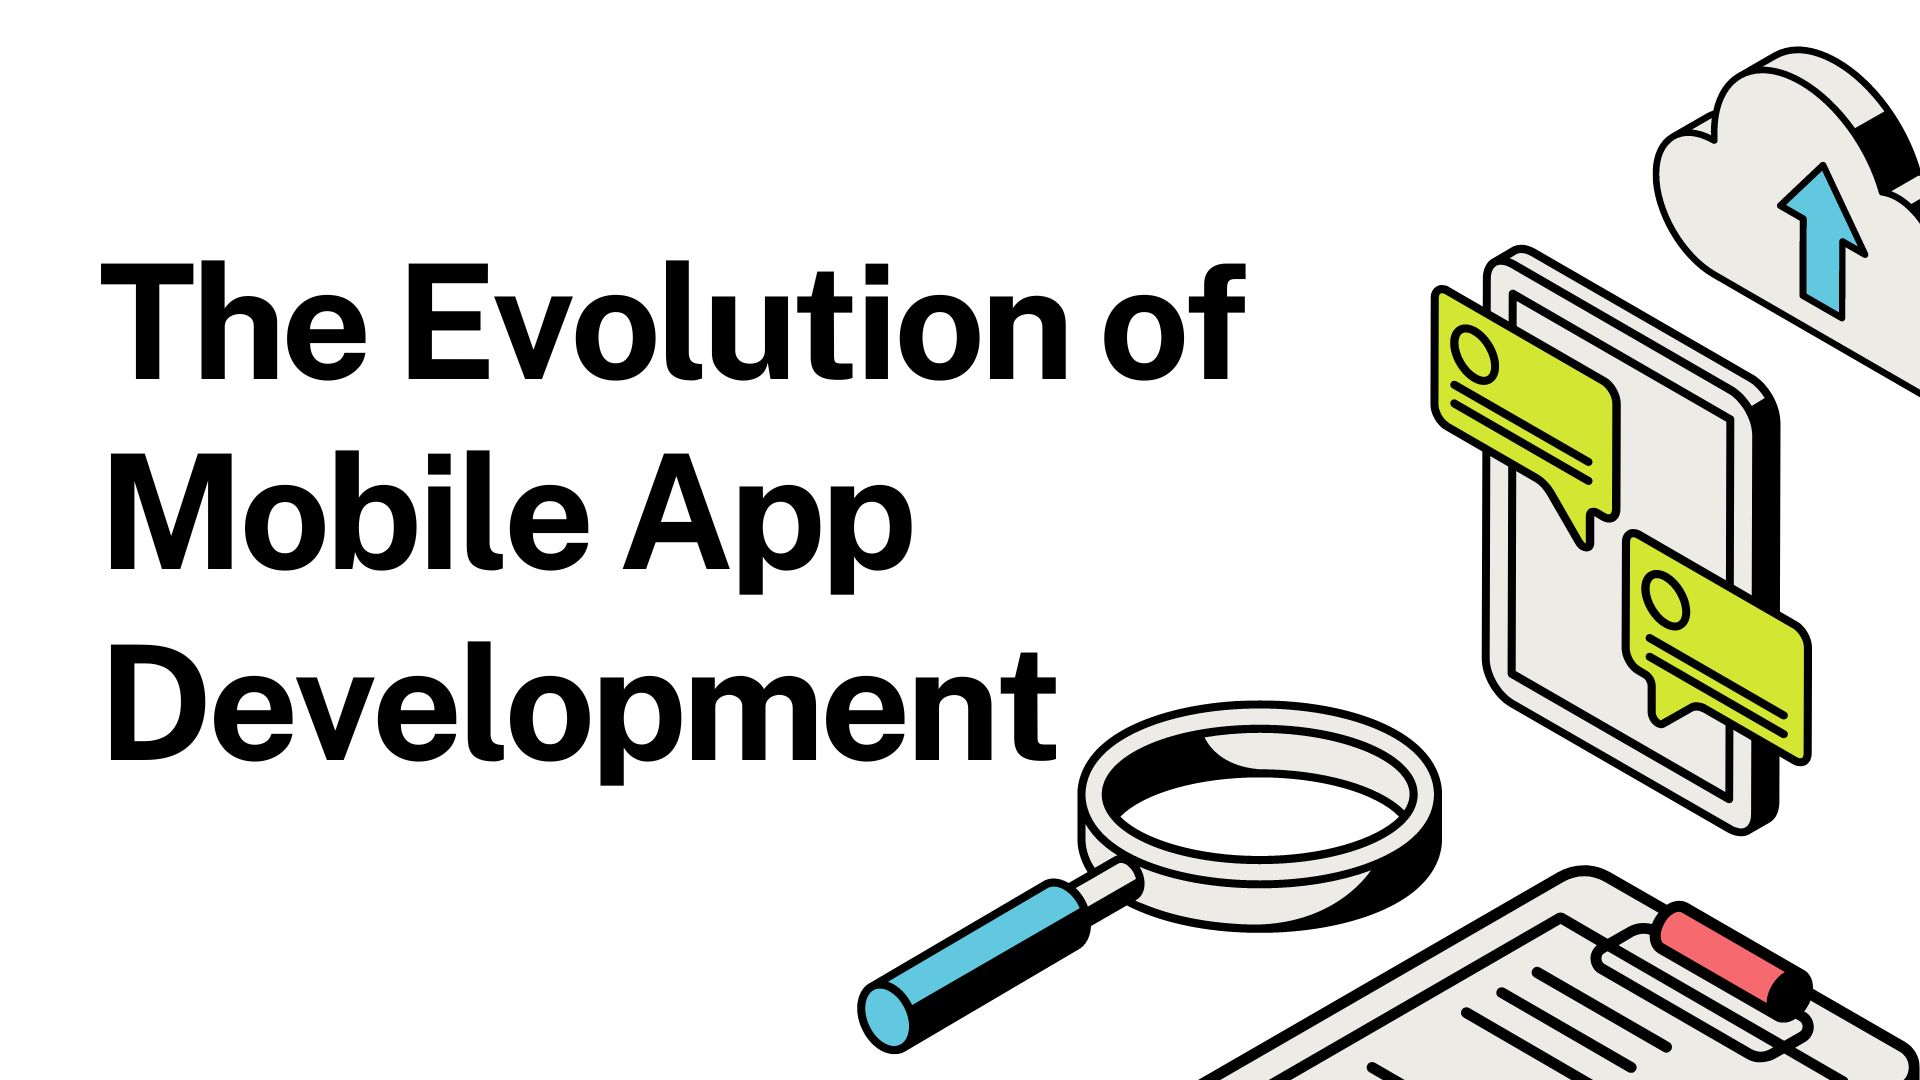 The Evolution of Mobile App Development